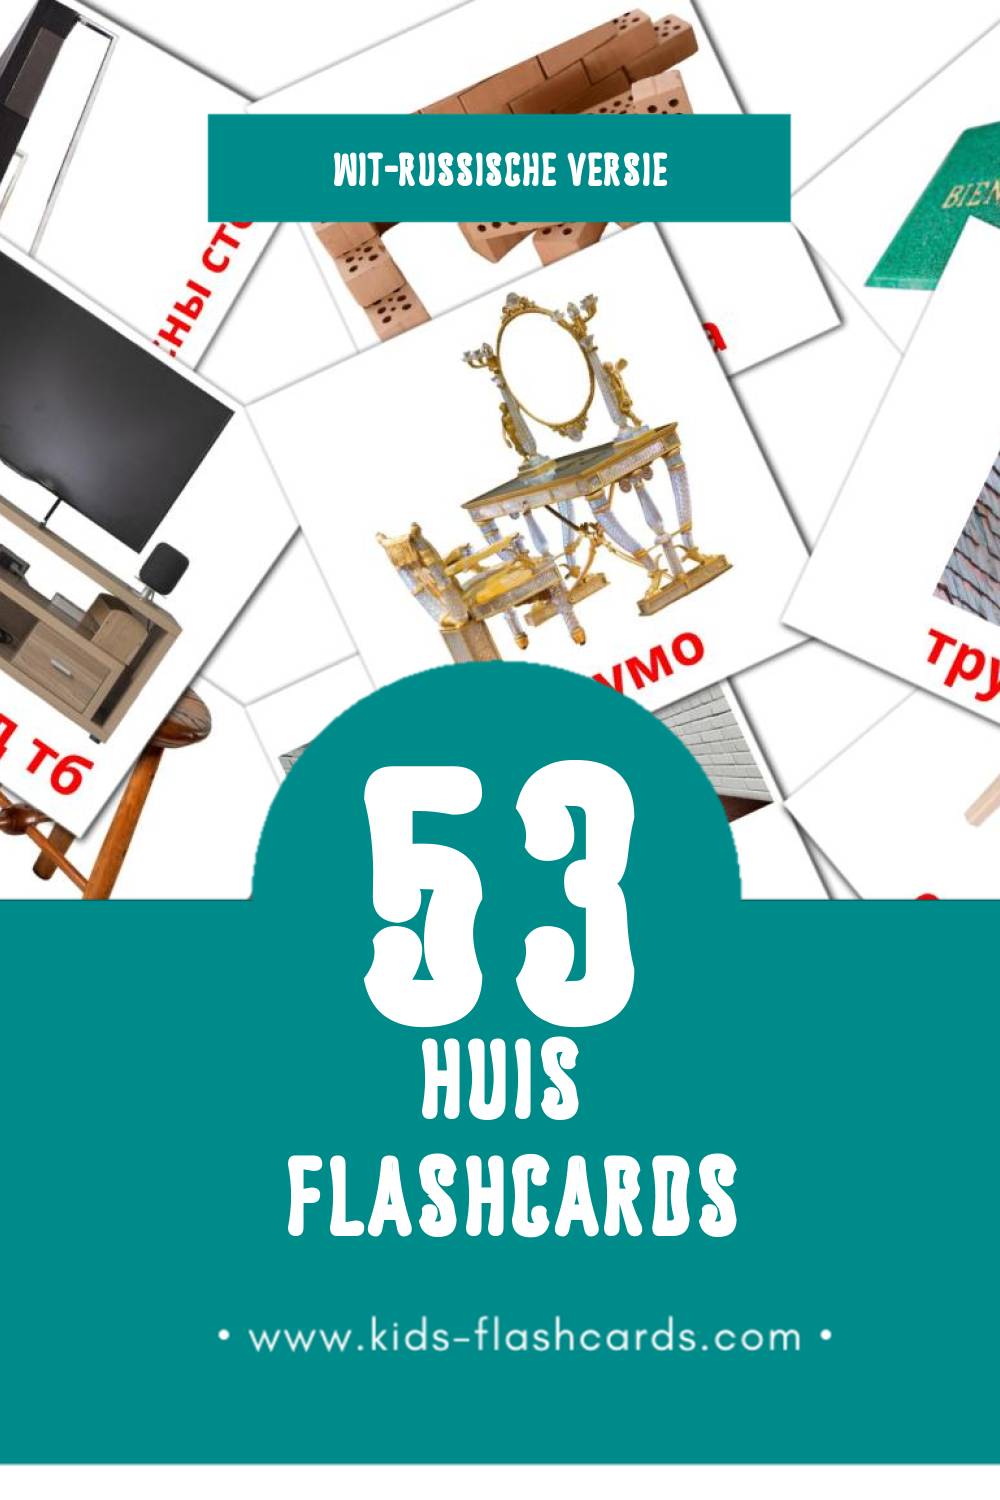 Visuele Дом Flashcards voor Kleuters (53 kaarten in het Wit-russisch)